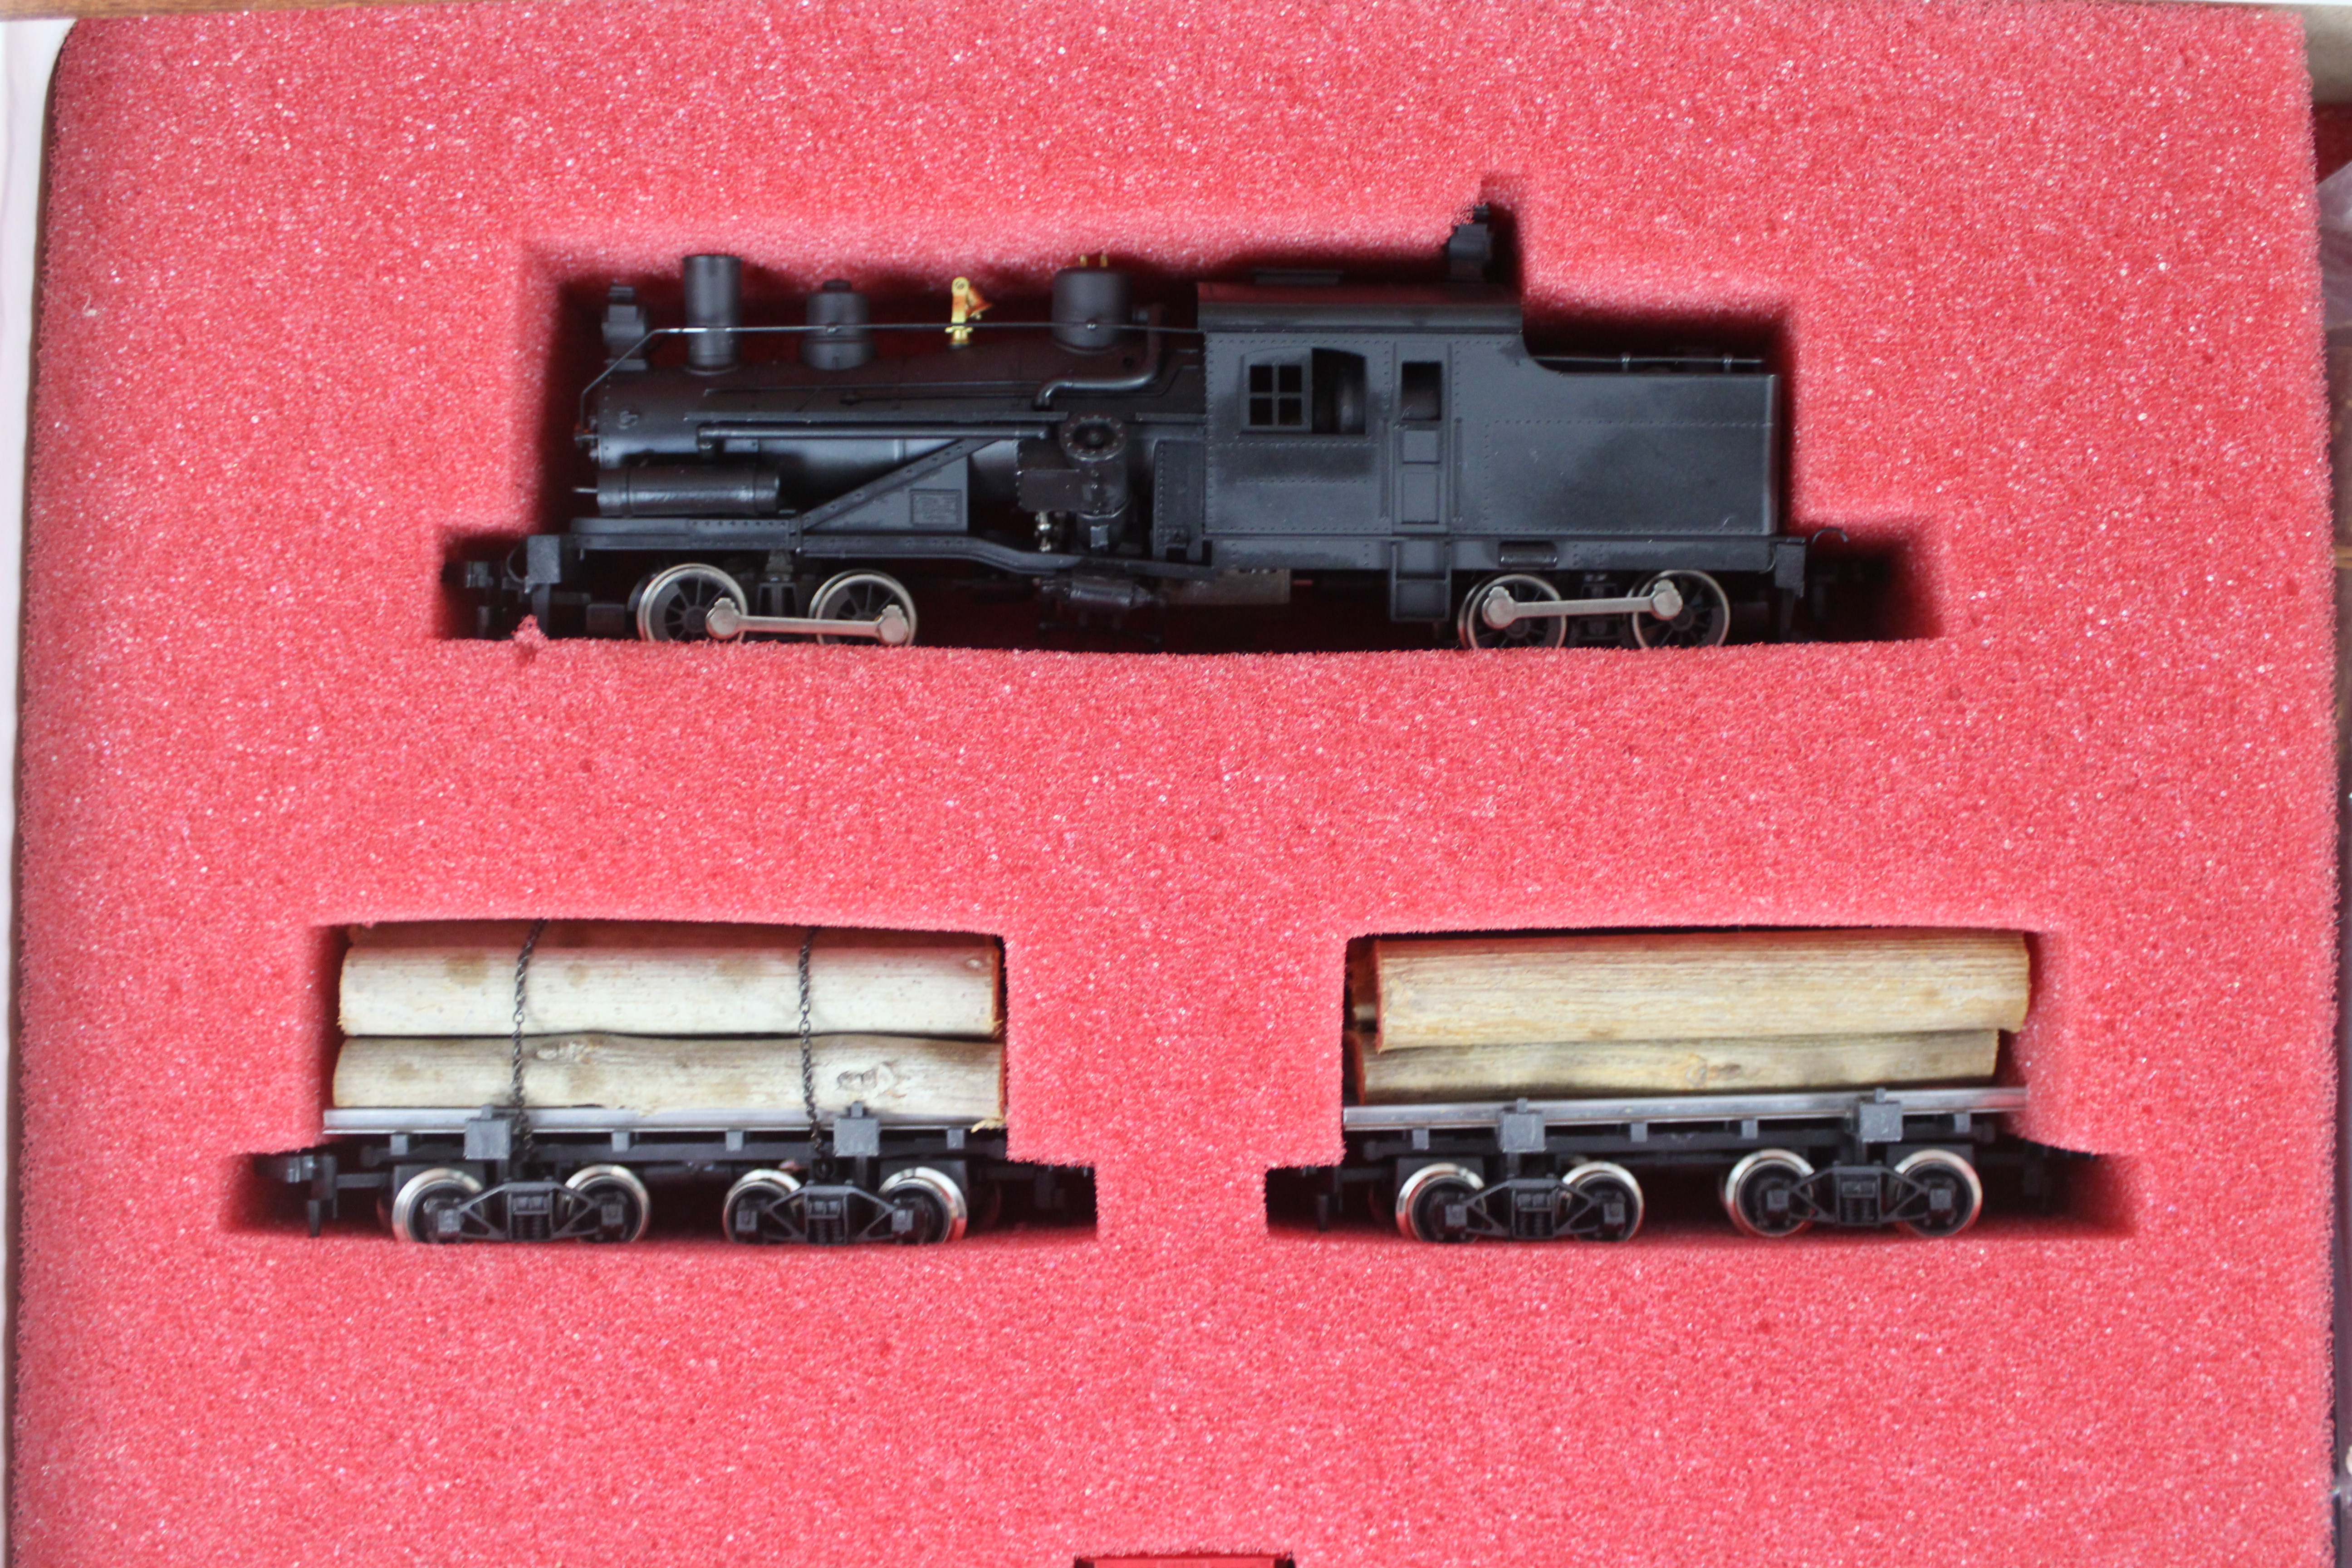 Con-Cor, Rivarossi - A boxed HO scale Con-Cor / Rivarossi #007-000003 Log Train set with Sawmill. - Image 3 of 5